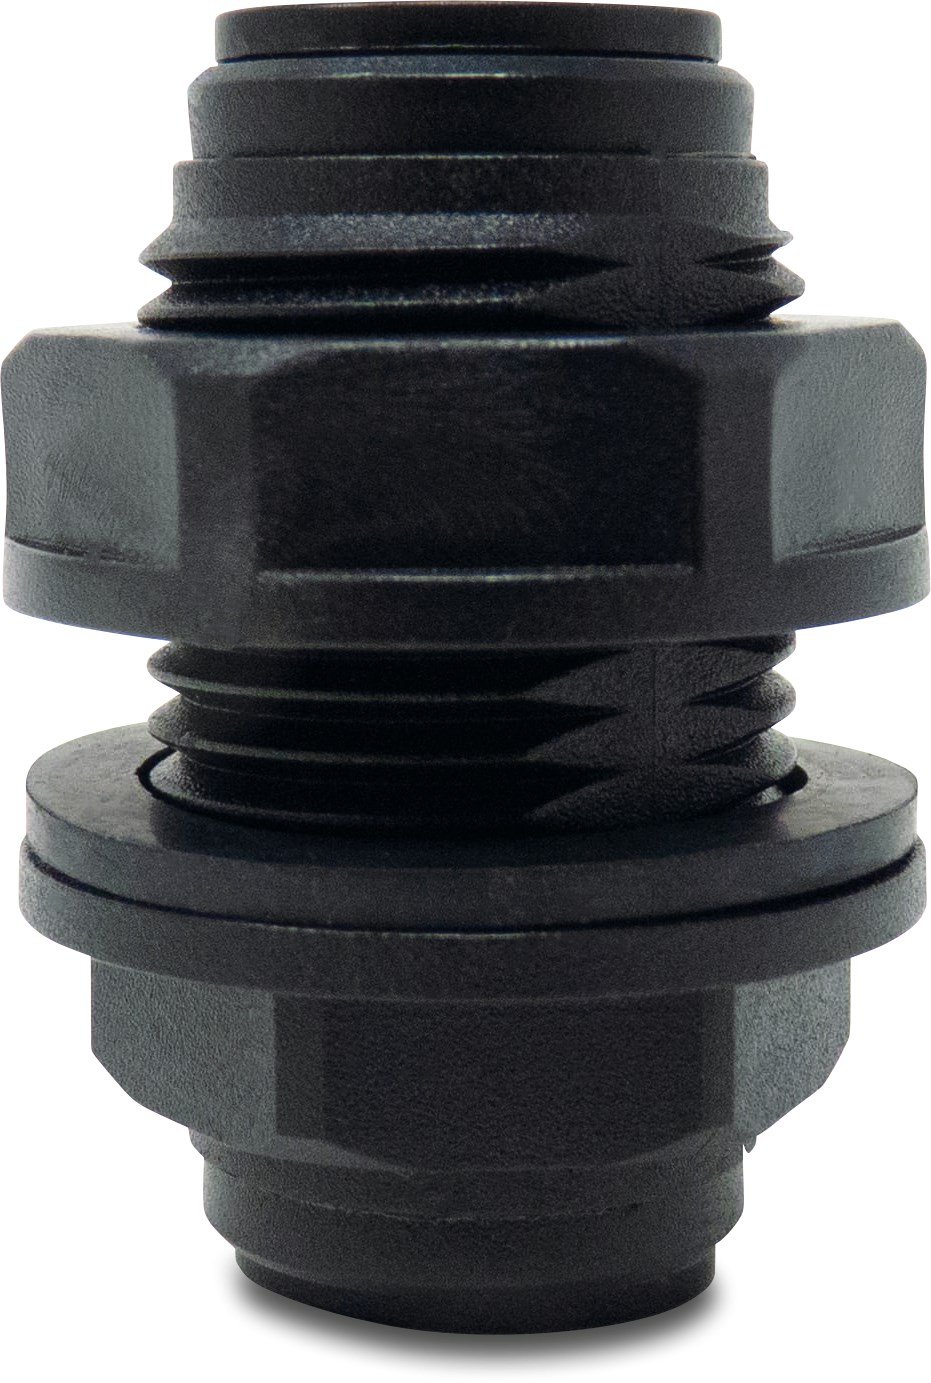 Doorvoer POM 4 mm insteek 20bar zwart WRAS type Aquaspeed